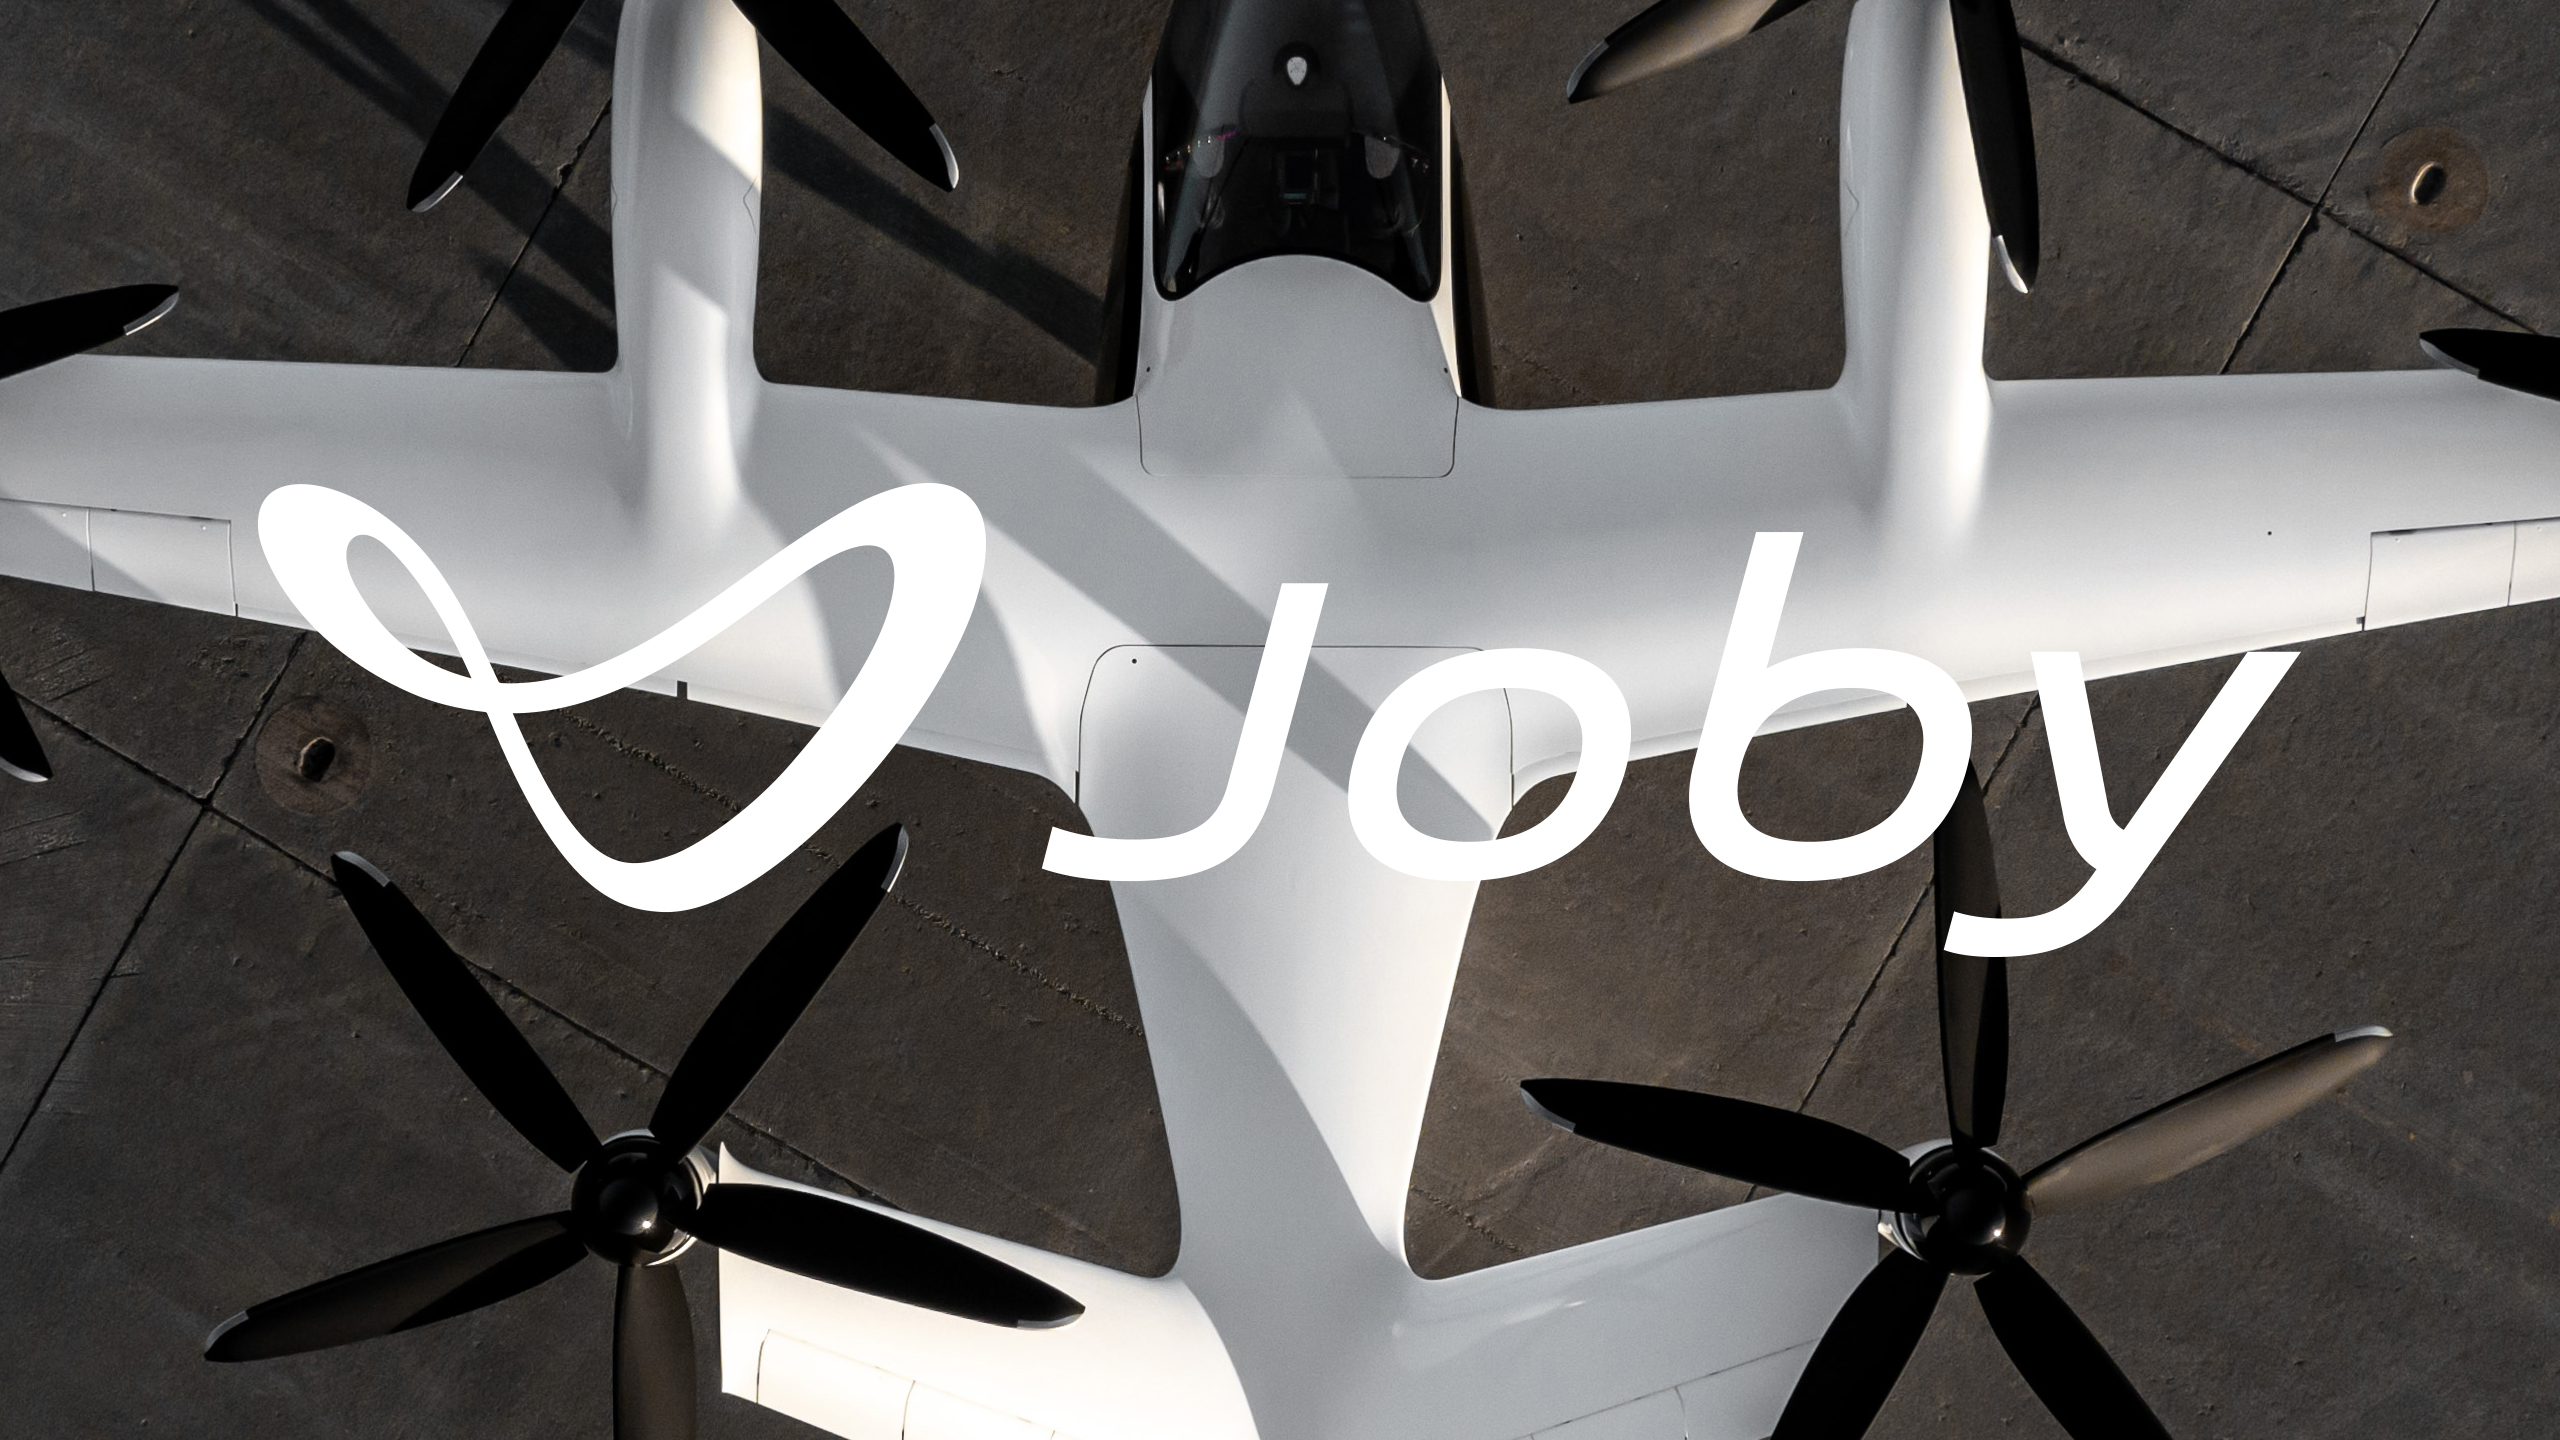 Joby Aviation Logo Overlaid on Aircraft